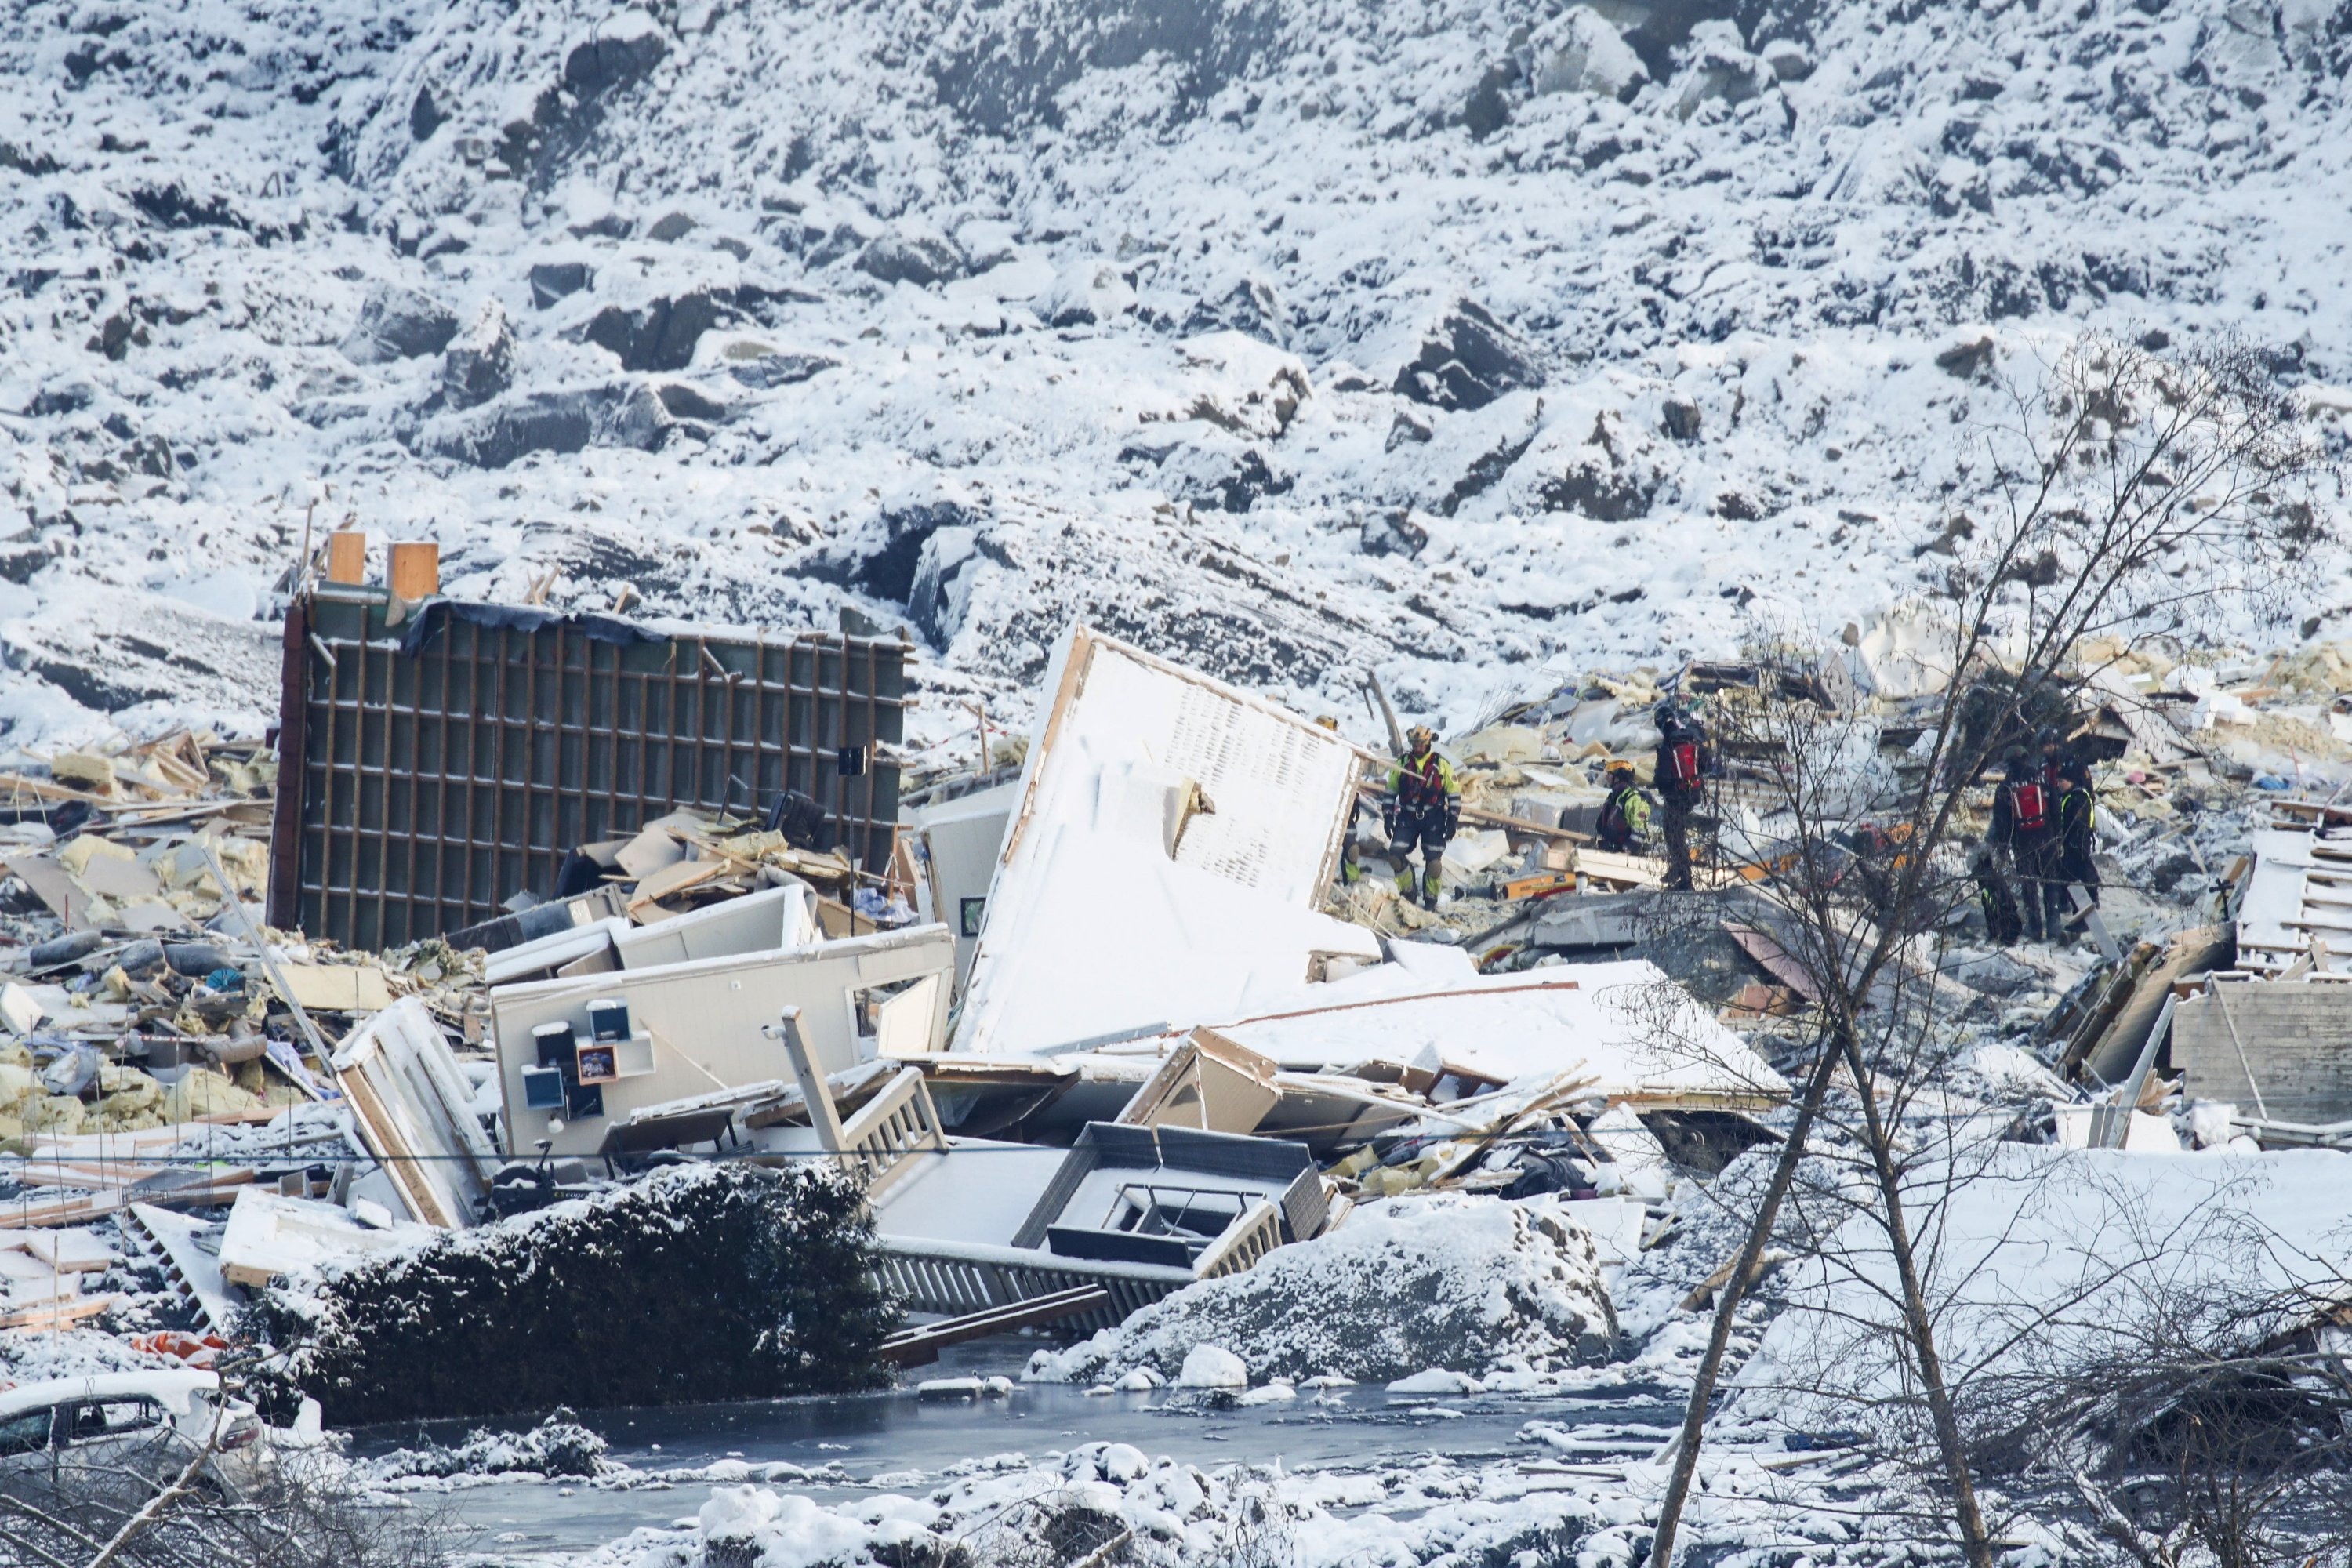 Rescuers in Norway lose hope of finding landslide survivors